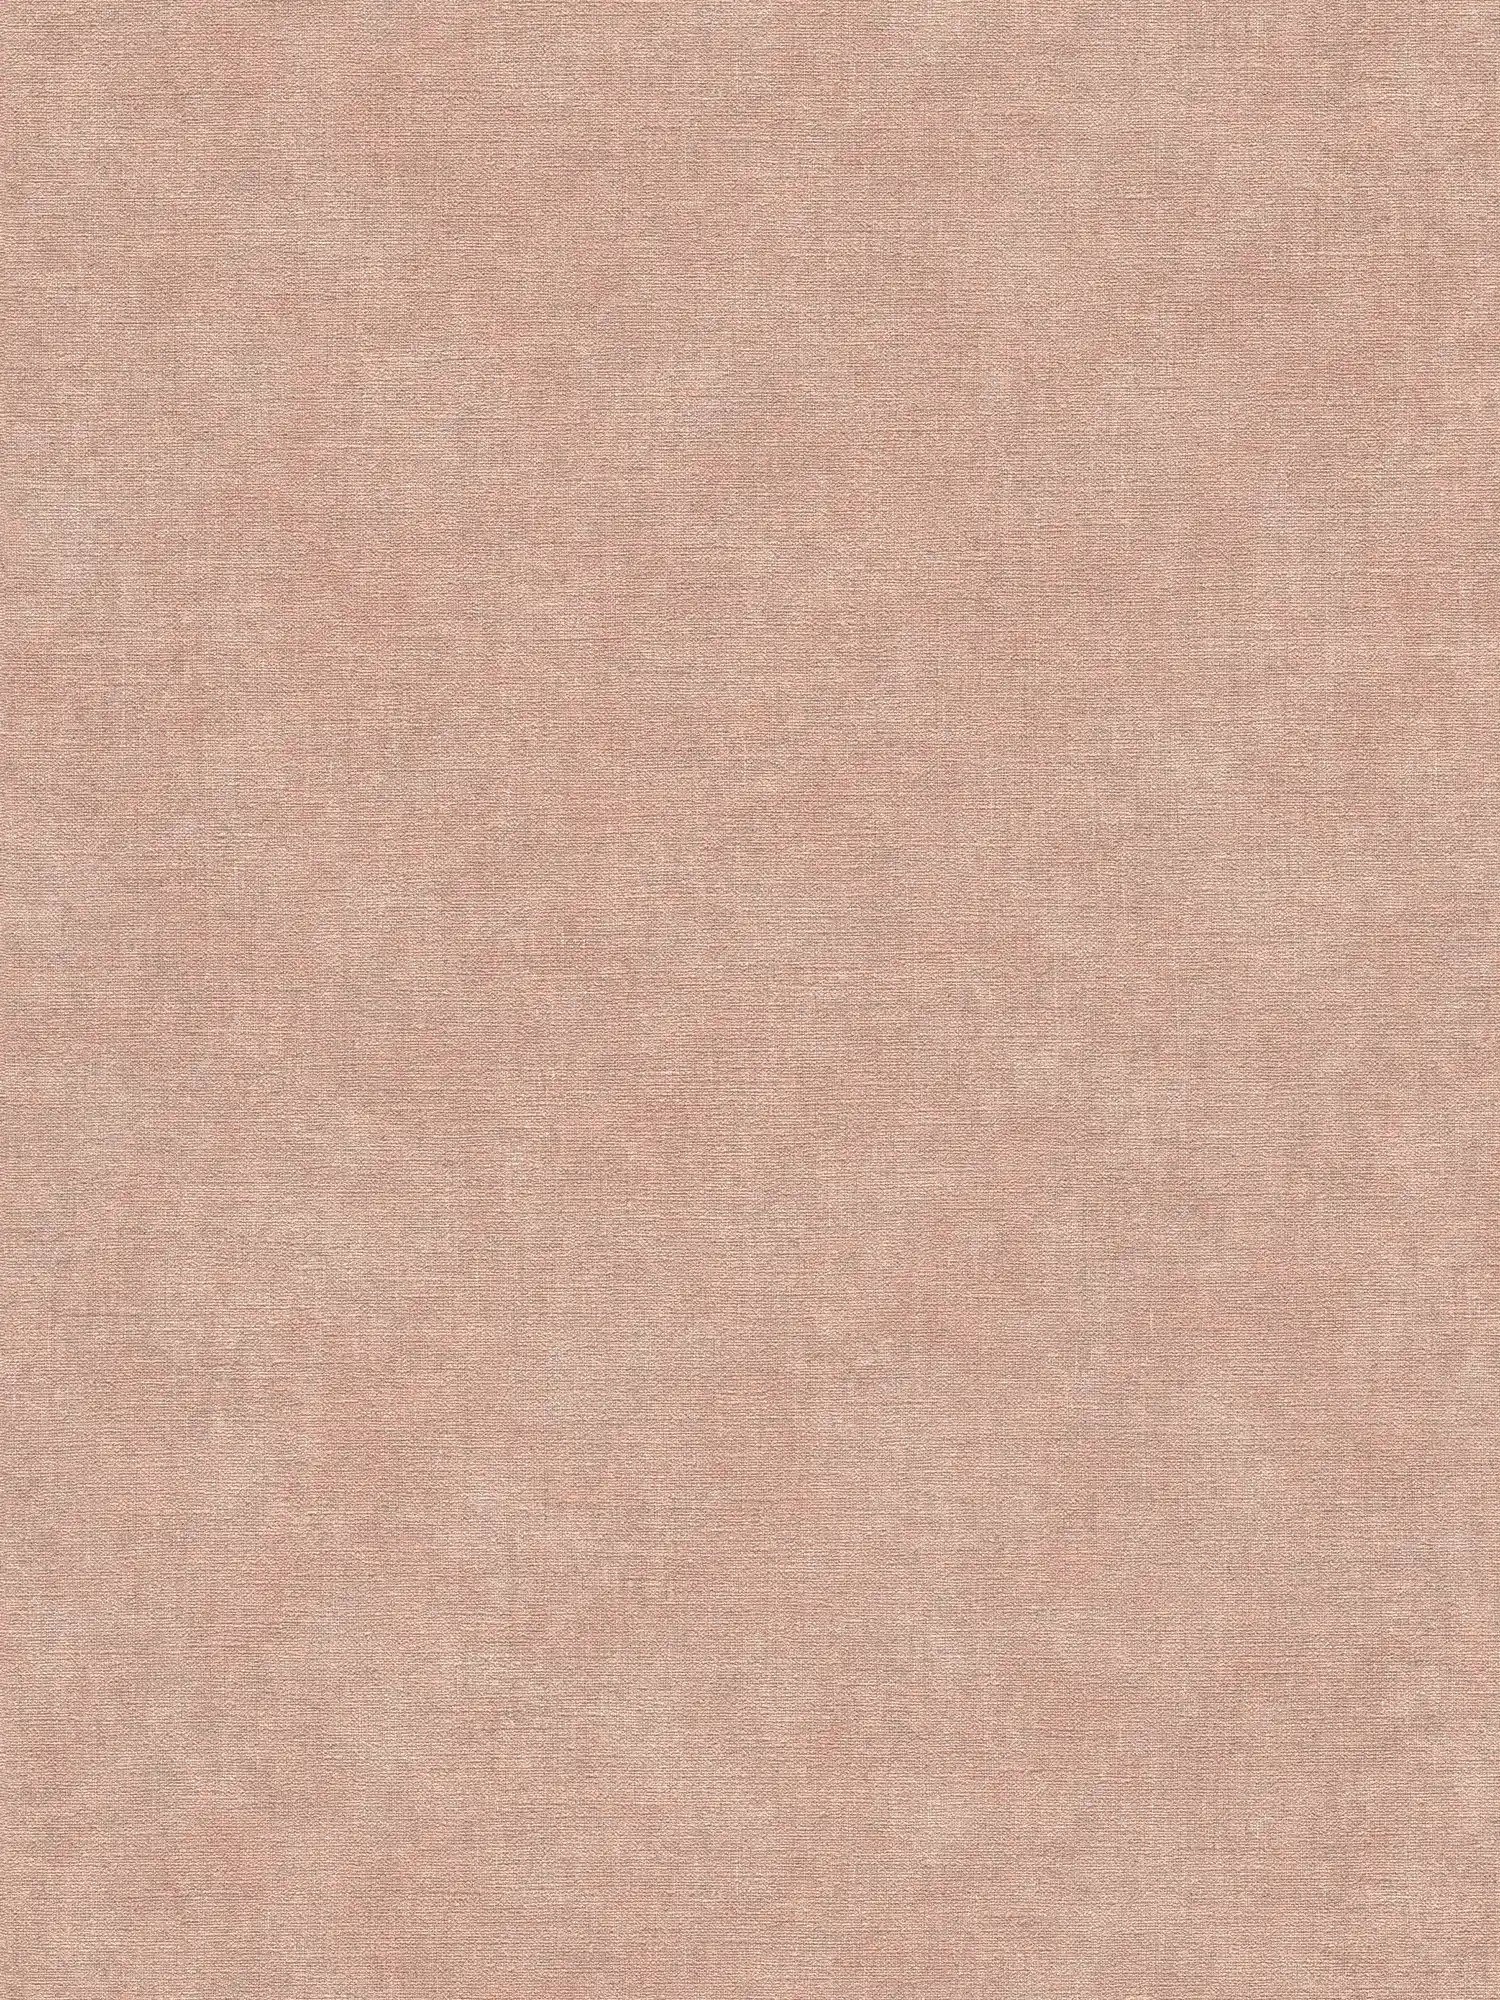             papier peint en papier intissé uni à l'aspect crépi doux - rose, gris
        